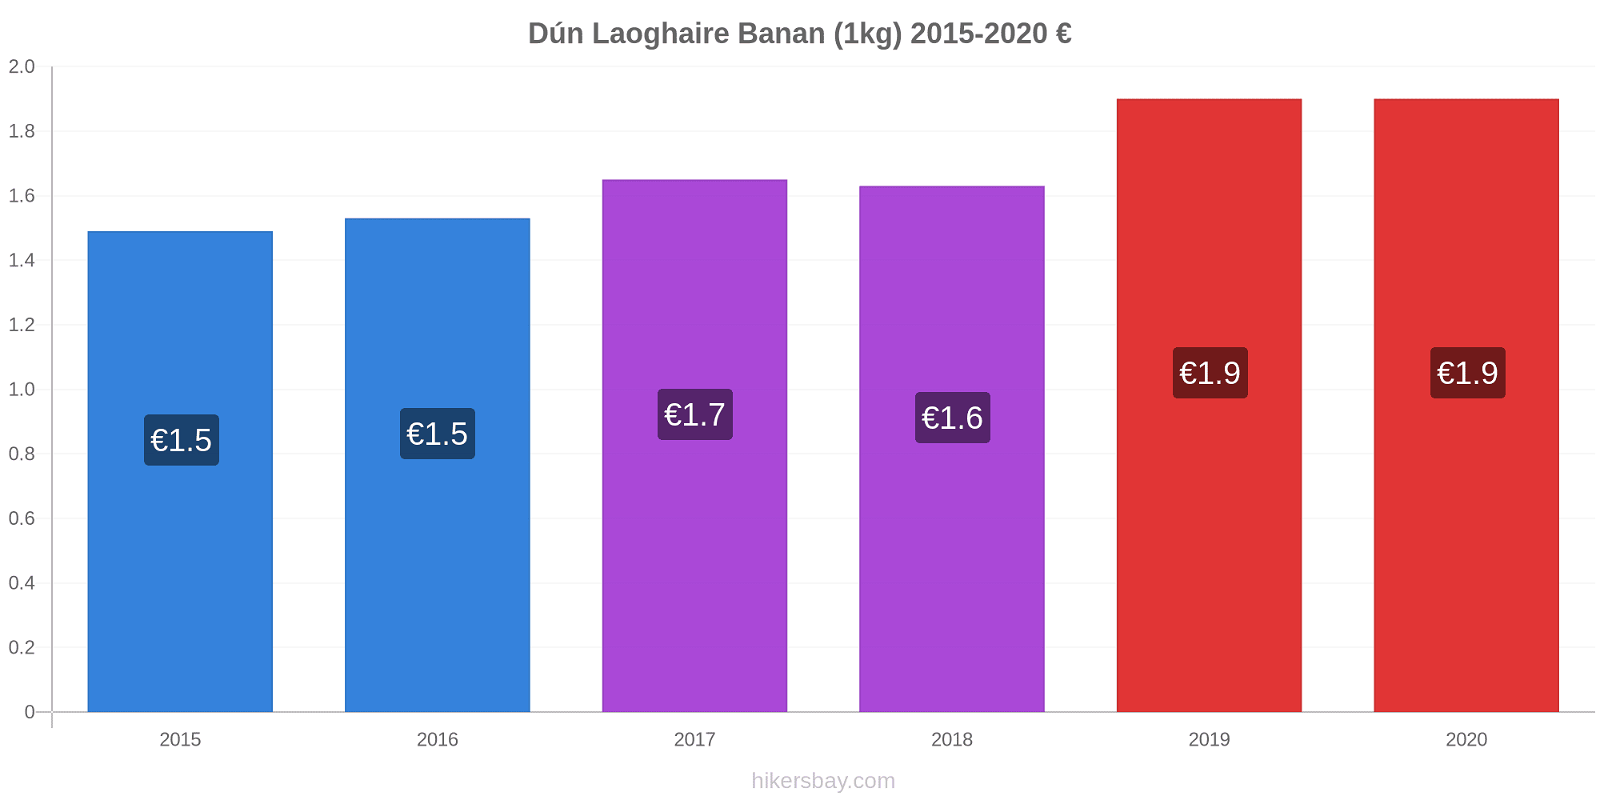 Dún Laoghaire prisændringer Banan (1kg) hikersbay.com